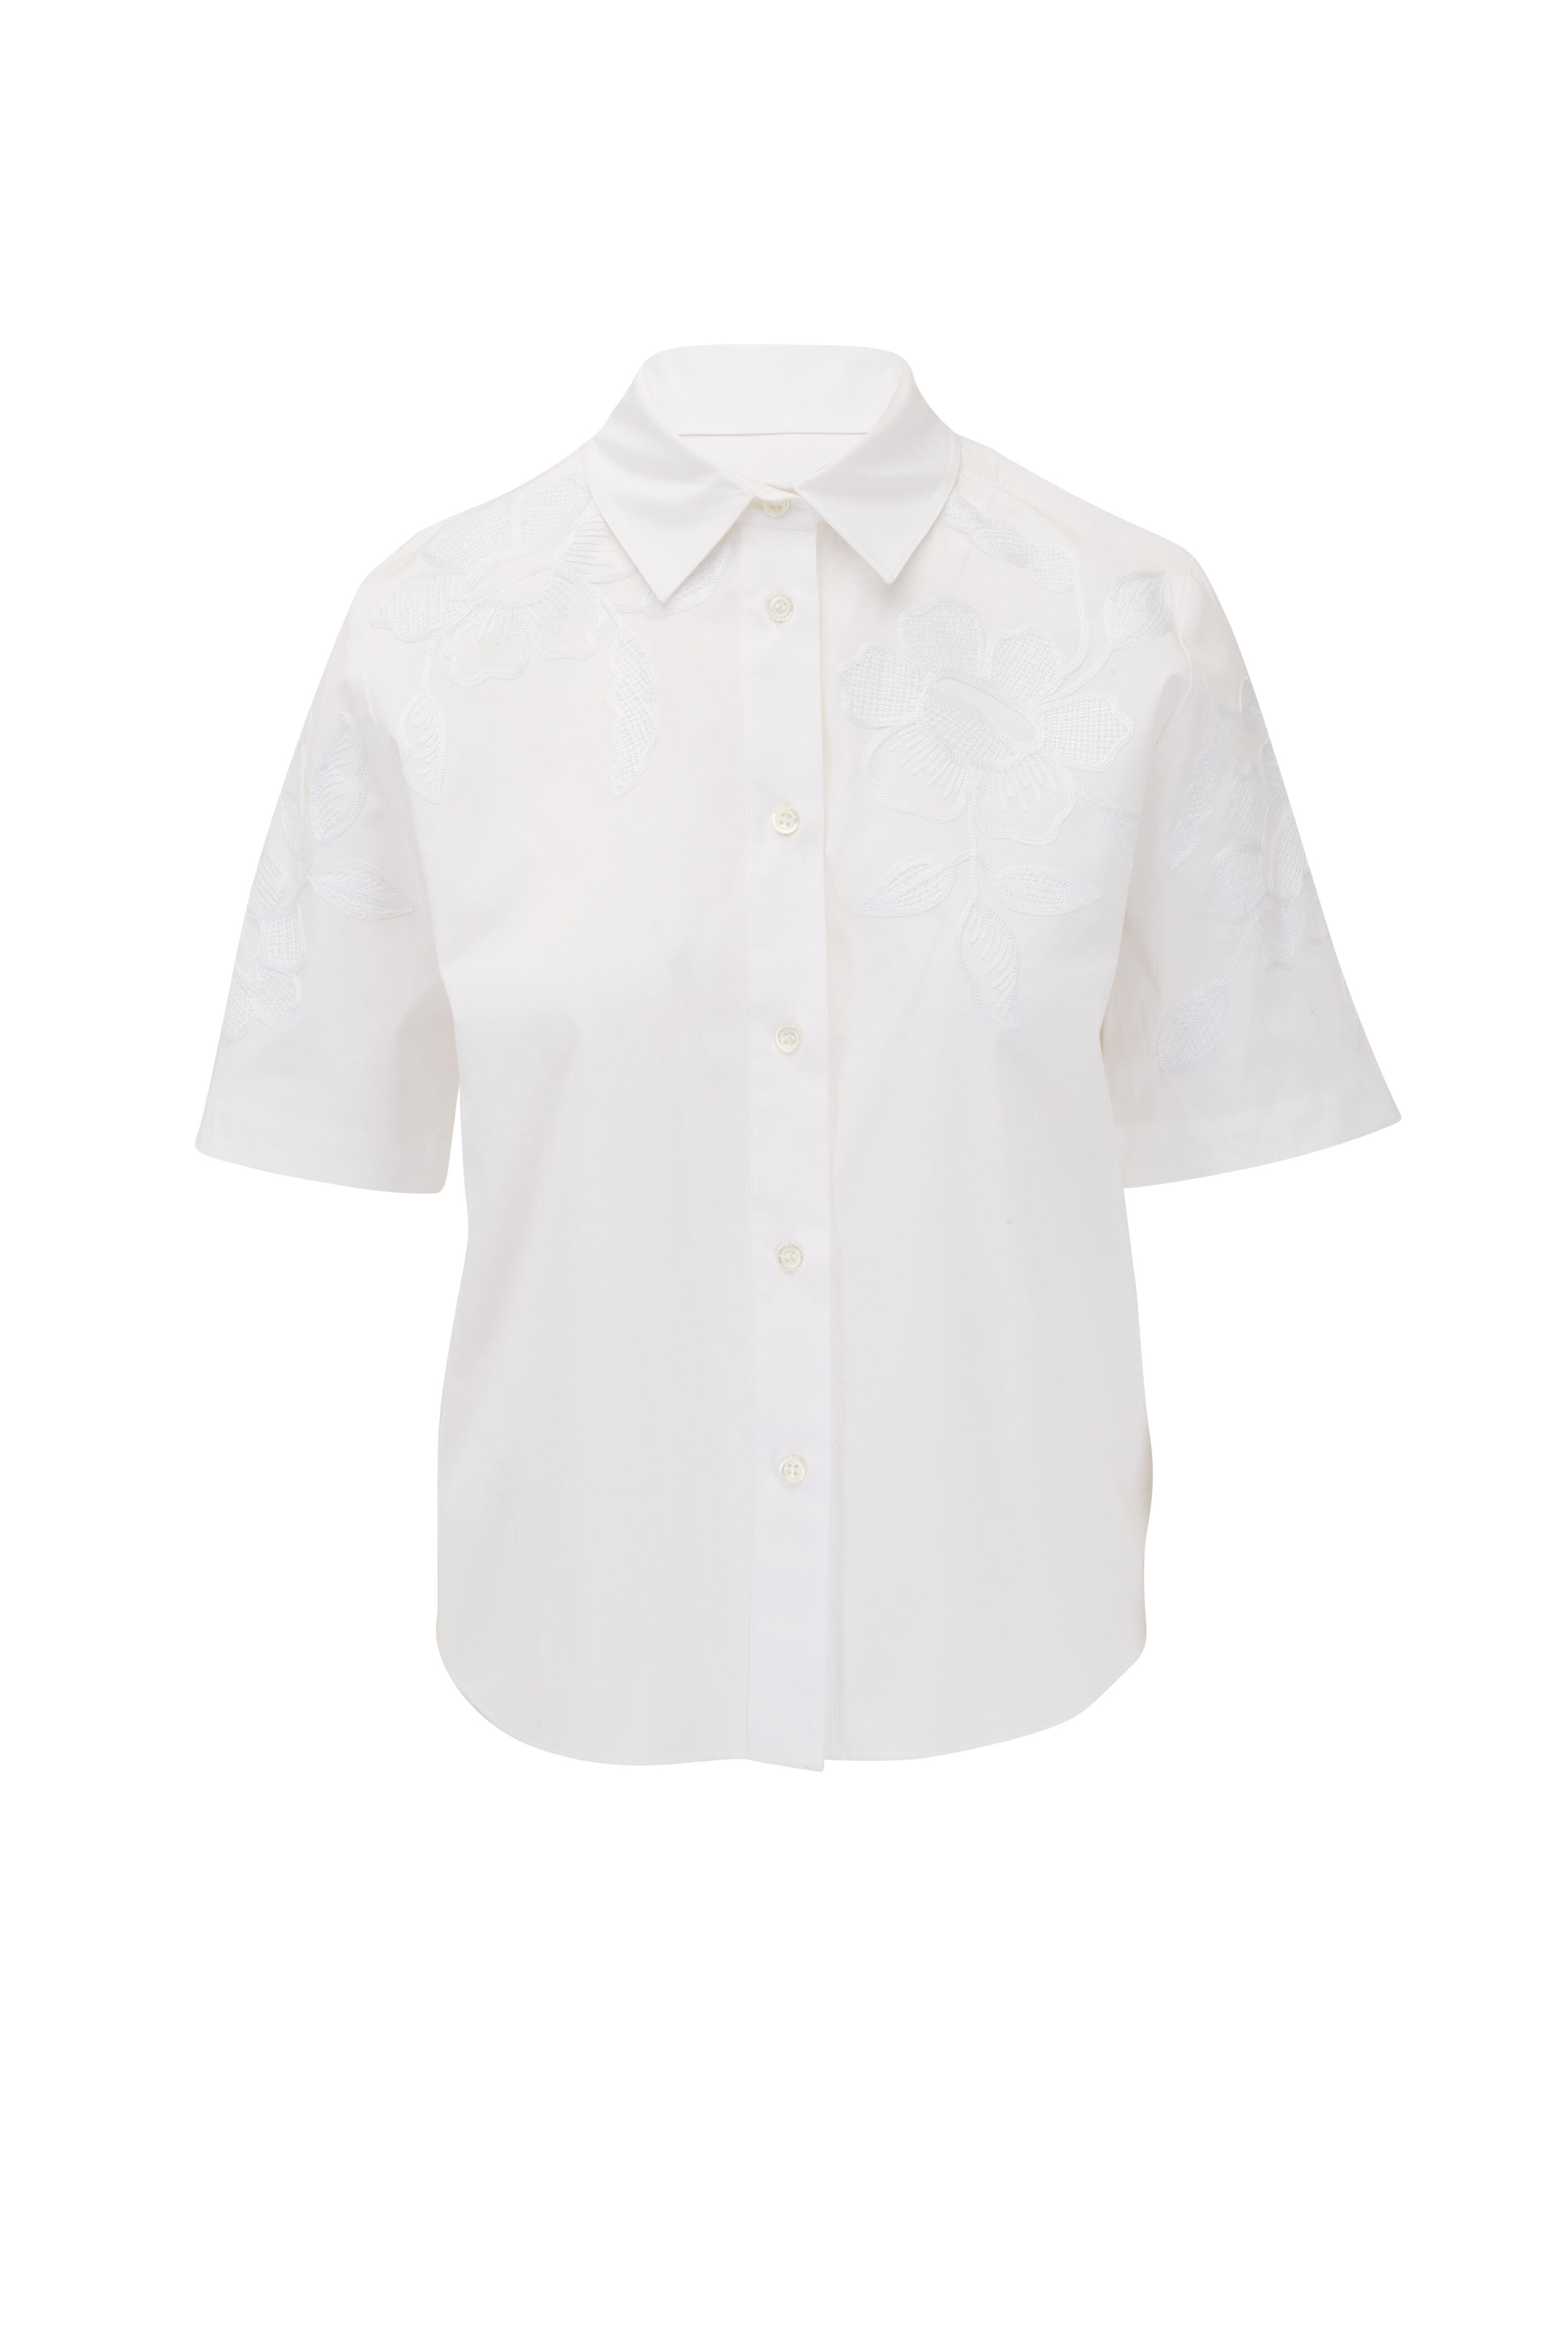 Carolina Herrera - White Embroidered Short Sleeve Blouse